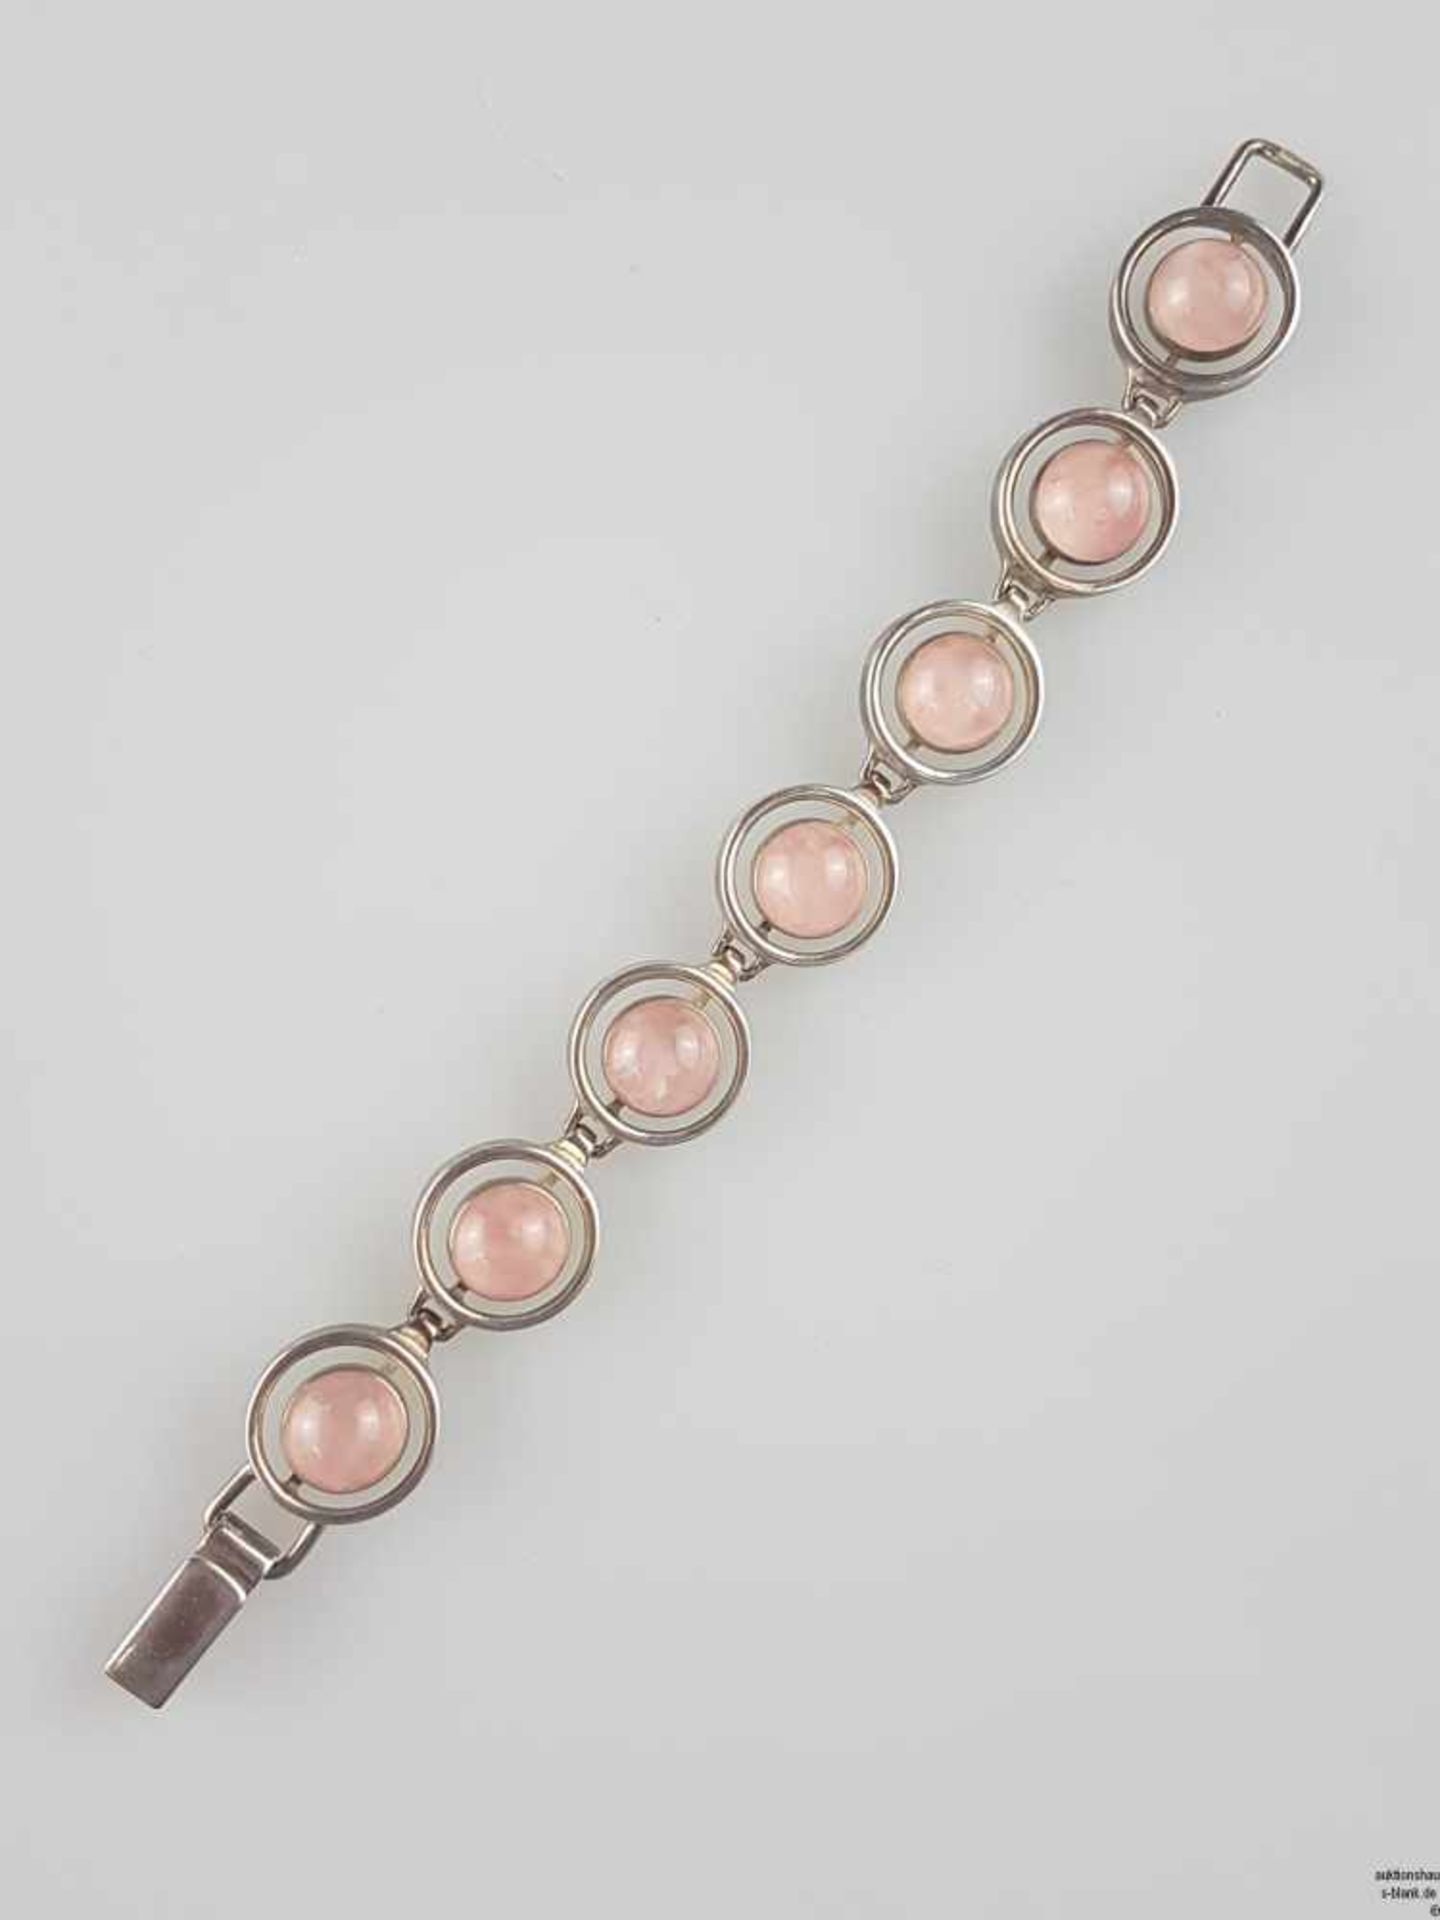 Armband mit Rosenquarzsteinen - runde Glieder mit Rosenquarz-Cabochons in Silberfassung 925,